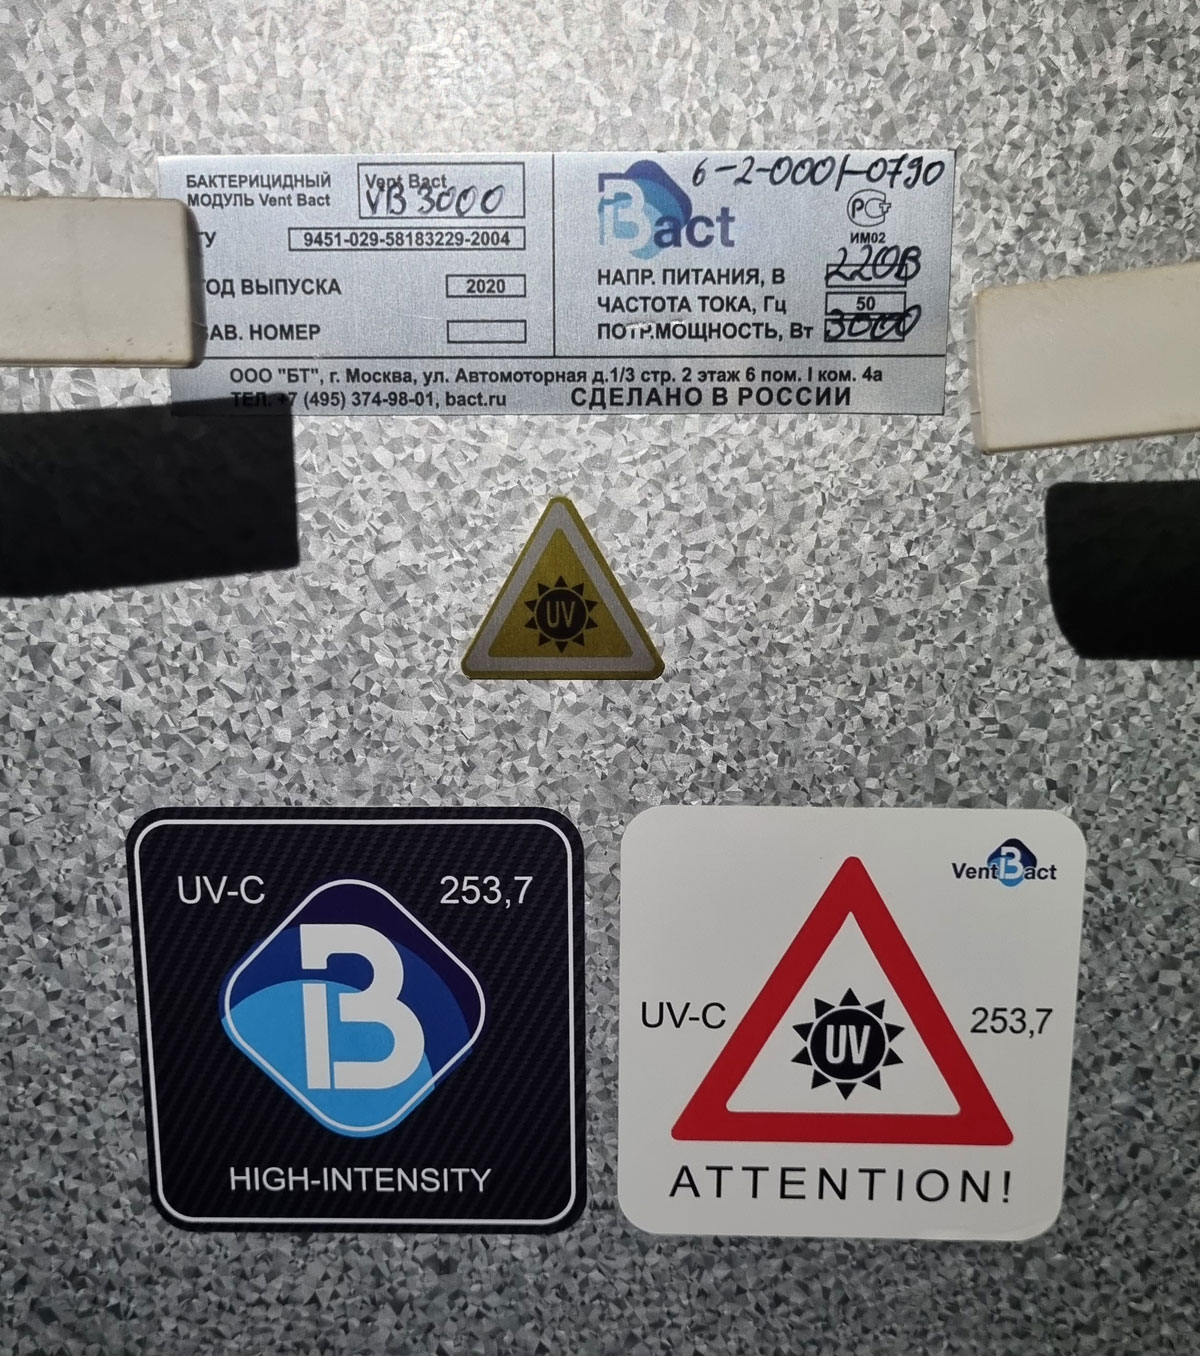 Информационный шильдик бактерицидной секции Vent Bact VB 3000 и предупреждающие об UV-C-излучении наклейки на корпусе вентиляционного модуля VTS